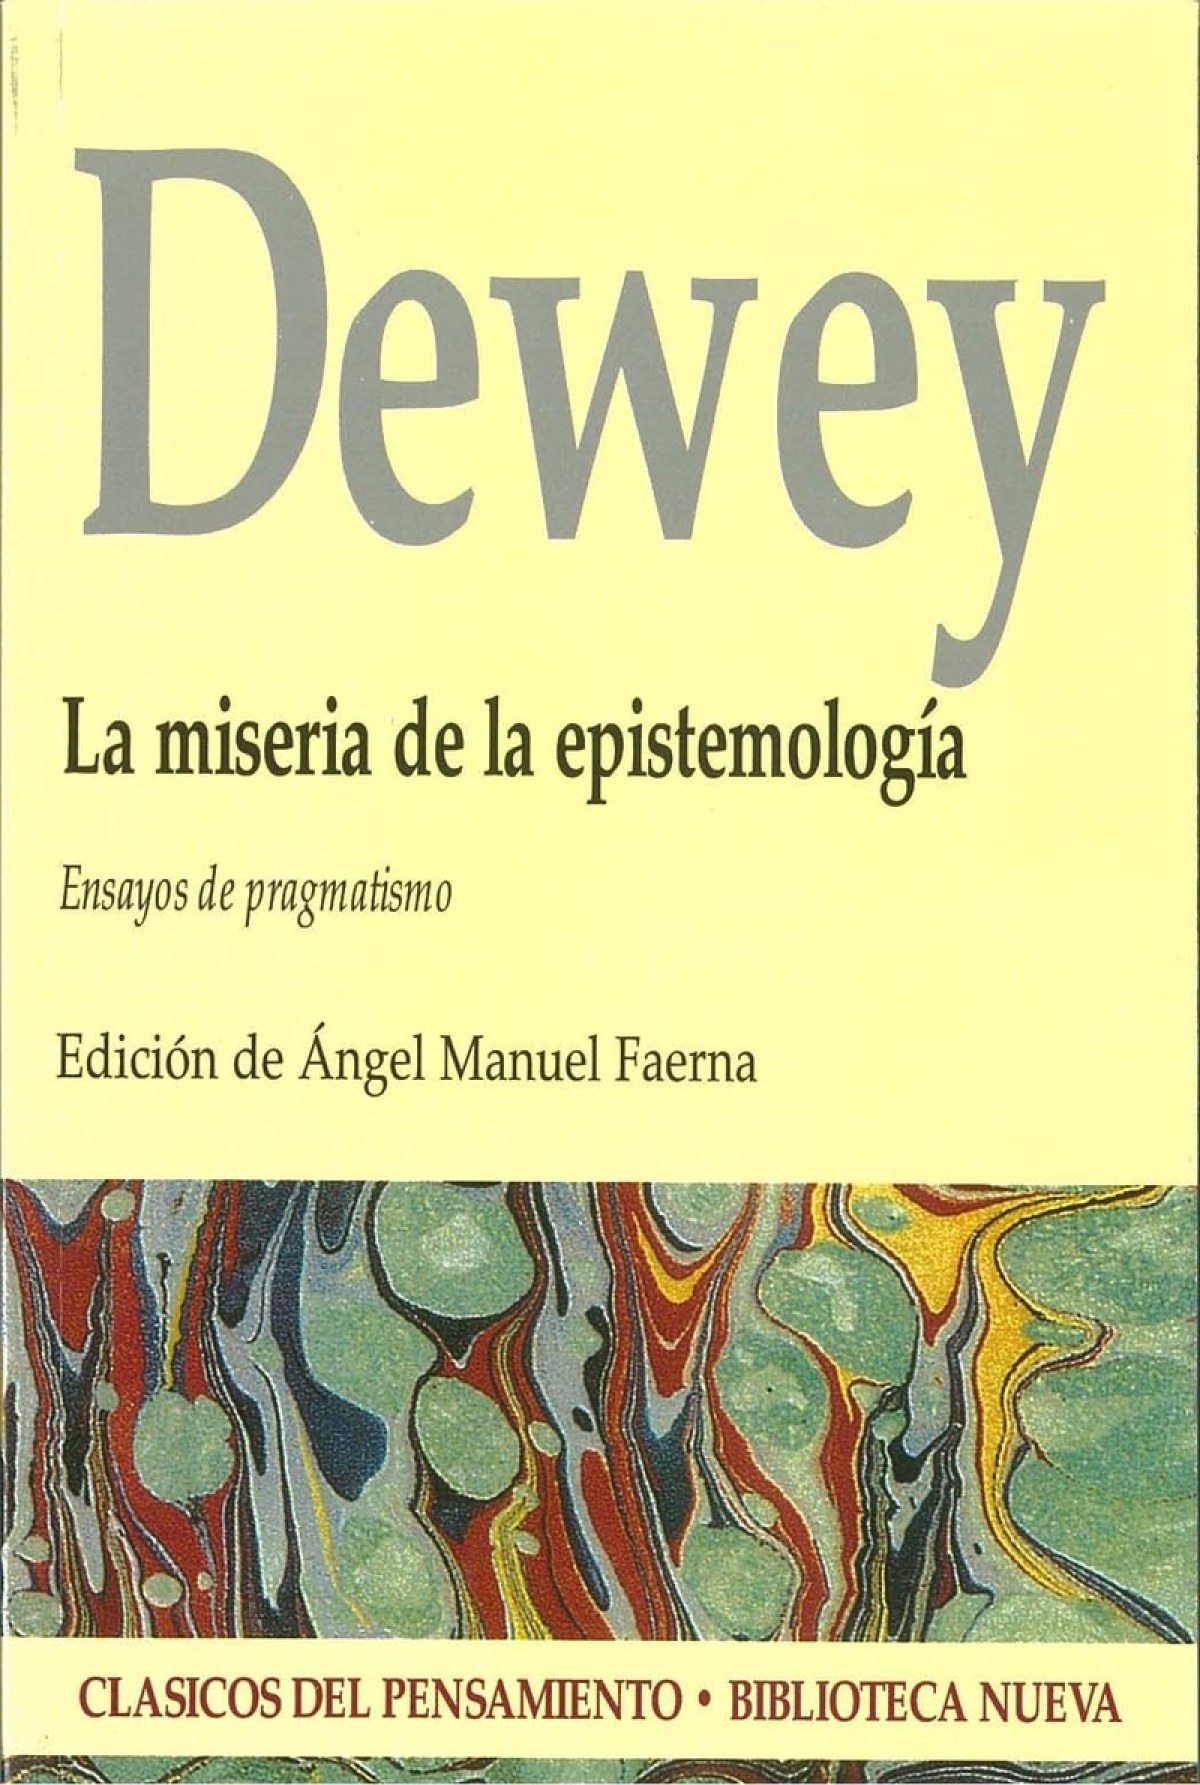 Miseria de la epistemologia,la - Dewey, John